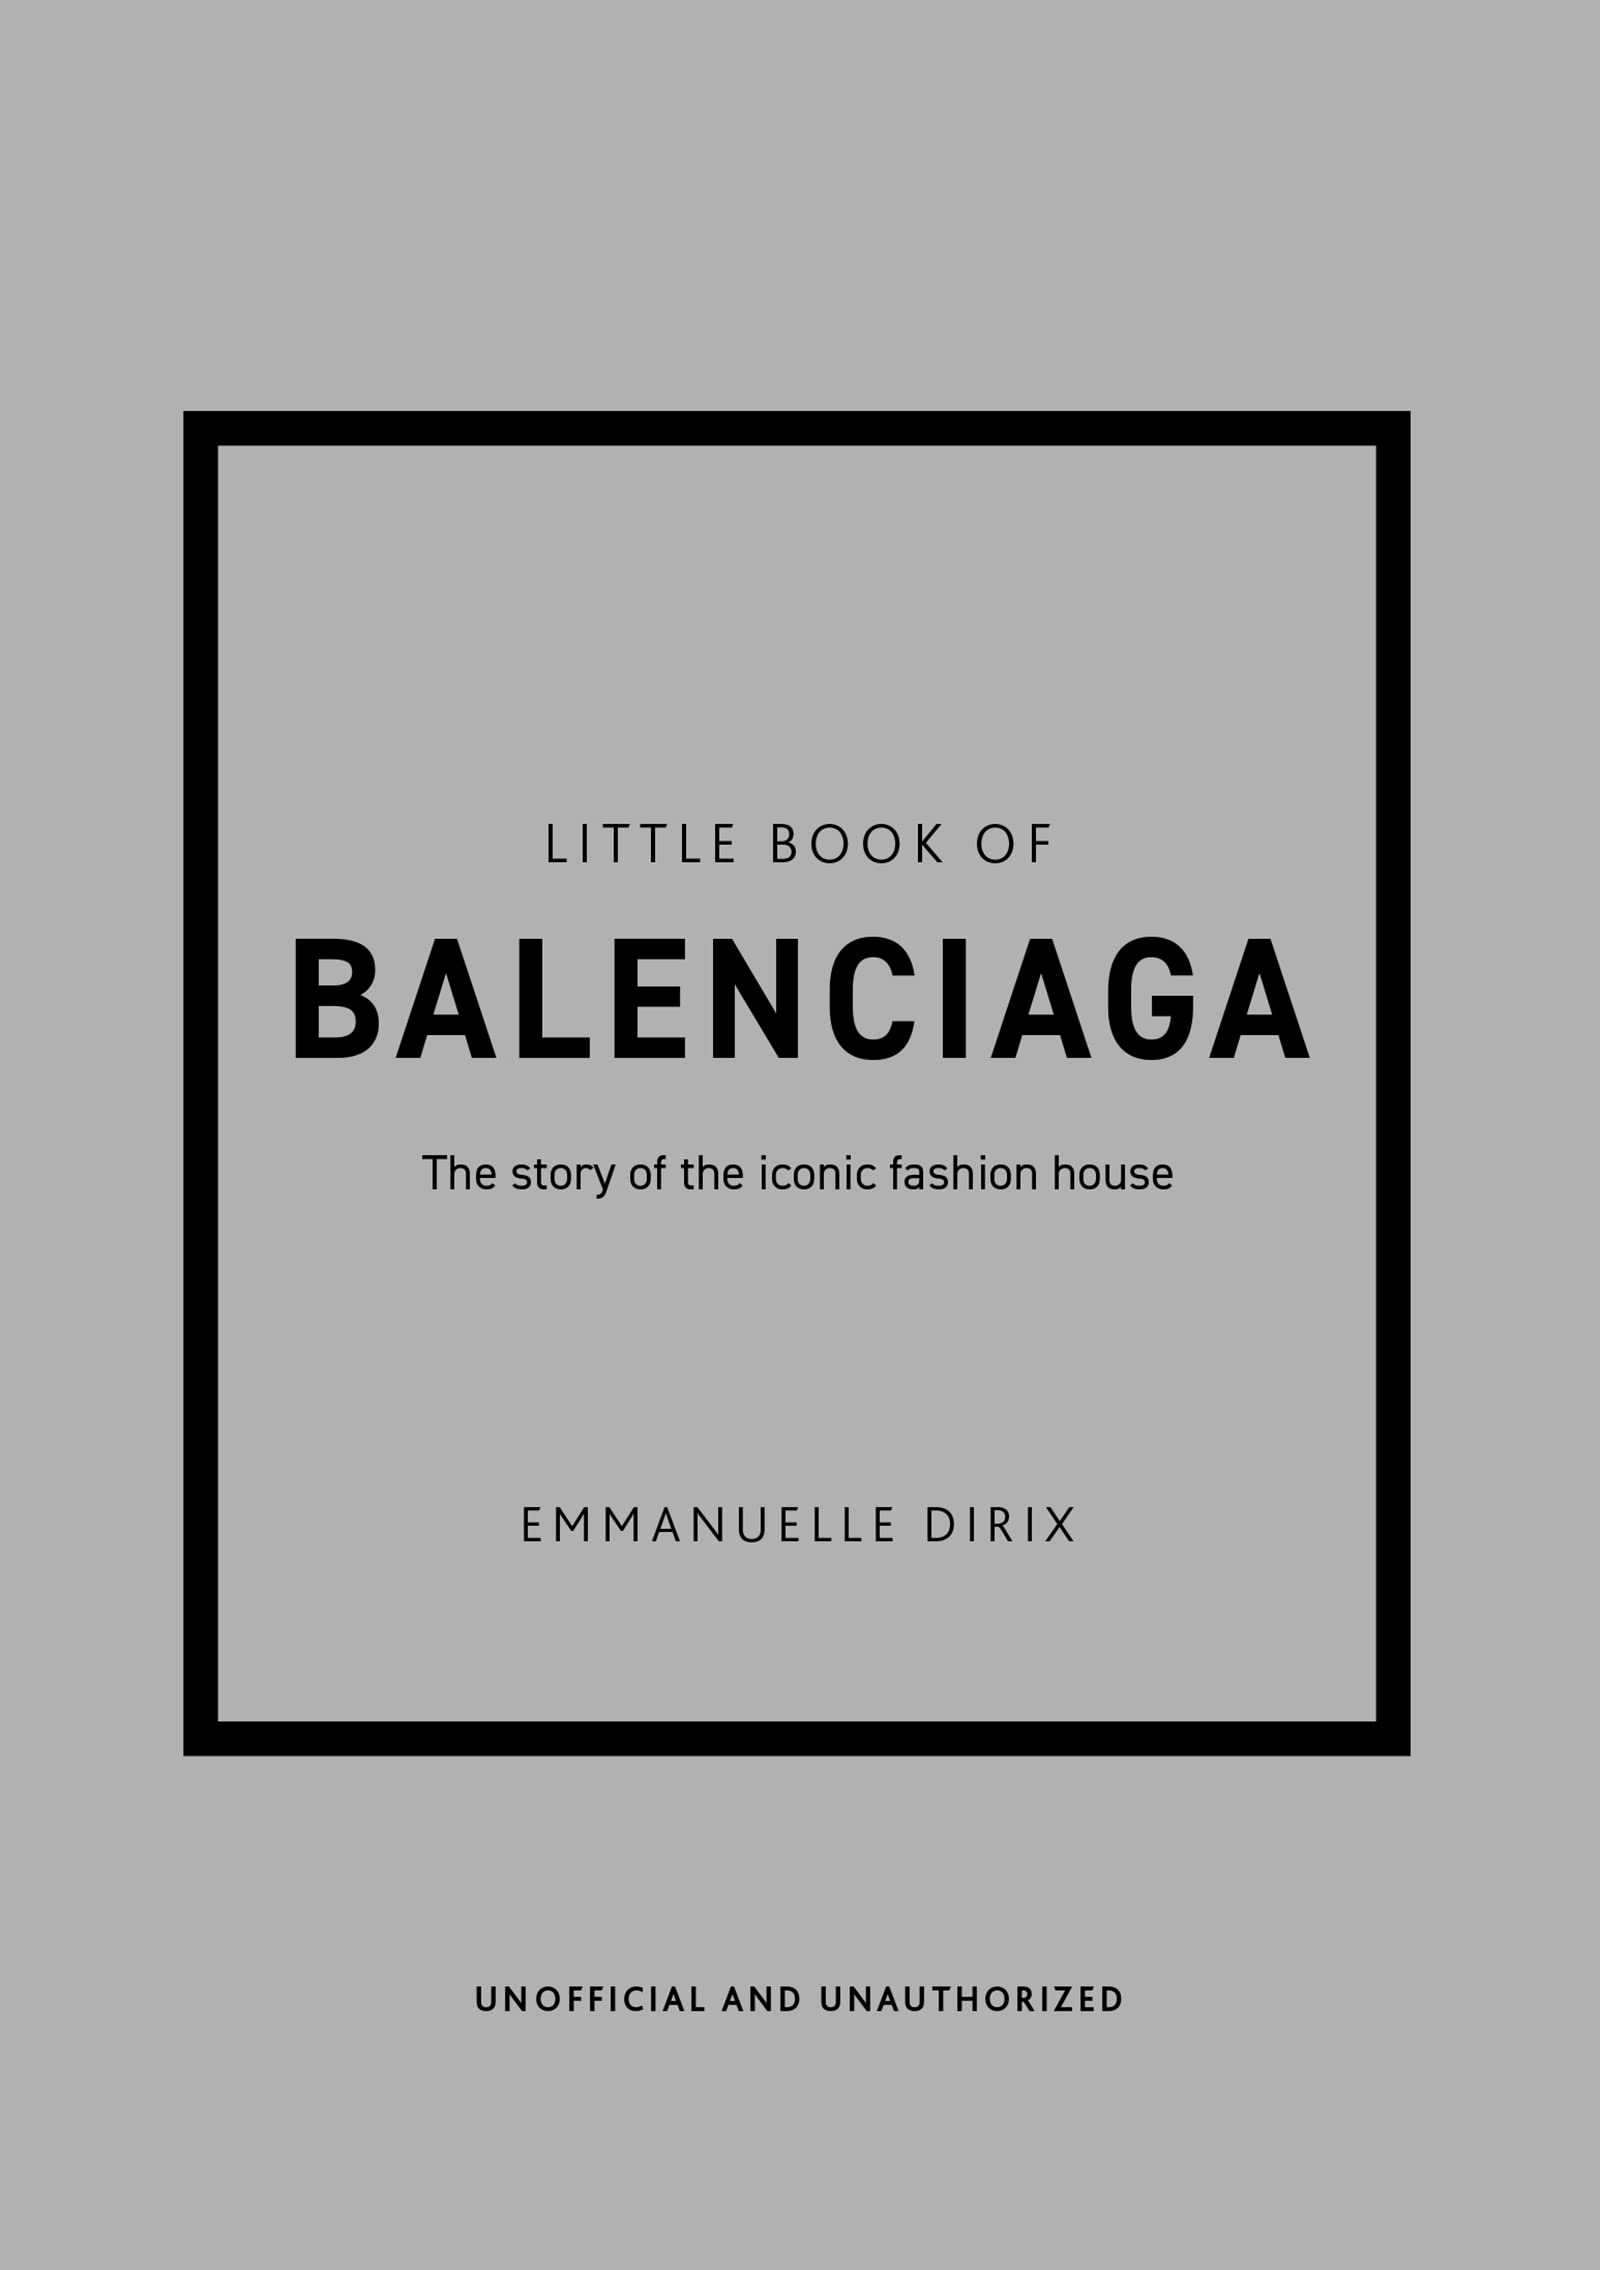 Little Book of Balenciaga: The Story of the Iconic Fashion House "Haute couture is als een orkest, geleid door Balenciaga. Wij couturiers zijn de muzikanten en we volgen de richting die hij geeft." - Christian DiorDe peetvader van conceptueel ontwerp, een meester in vorm, een echte mode-wisselaar - zoveel onderscheidingen toegekend aan een van de meest interessante, gerespecteerde en iconische couturiers van de 20e eeuw: Cristóbal Balenciaga. De zuivere lijn, het comfort van de kledingstukken en het innovatieve werk met textiel, kleur en volume hadden een enorme impact op de mode van de 20e eeuw, met ontwerpen zoals de nachtjapon, ballon- en tasjurken die vandaag de dag nog steeds in de mode zijn. Door middel van verbluffende afbeeldingen en boeiende tekst toont Little Book of Balenciaga het werk en leven van Balenciaga, de couturier. Modehistoricus Emmanuelle Dirix onderzoekt zijn nalatenschap door zowel de artistieke richting van het Maison na zijn dood te traceren als de generaties ontwerpers die door de meester zelf zijn beïnvloed. Uitgever: ‎Welbeck Publishing Group; 12th ed. editie (7 februari 2022) Taal: ‎ Engels Hardcover: ‎ 160 pagina's ISBN-10: ‎ 1787398307 ISBN-13: ‎ 978-1787398306 Afmetingen: ‎ 13.21 x 1.78 x 18.8 cm